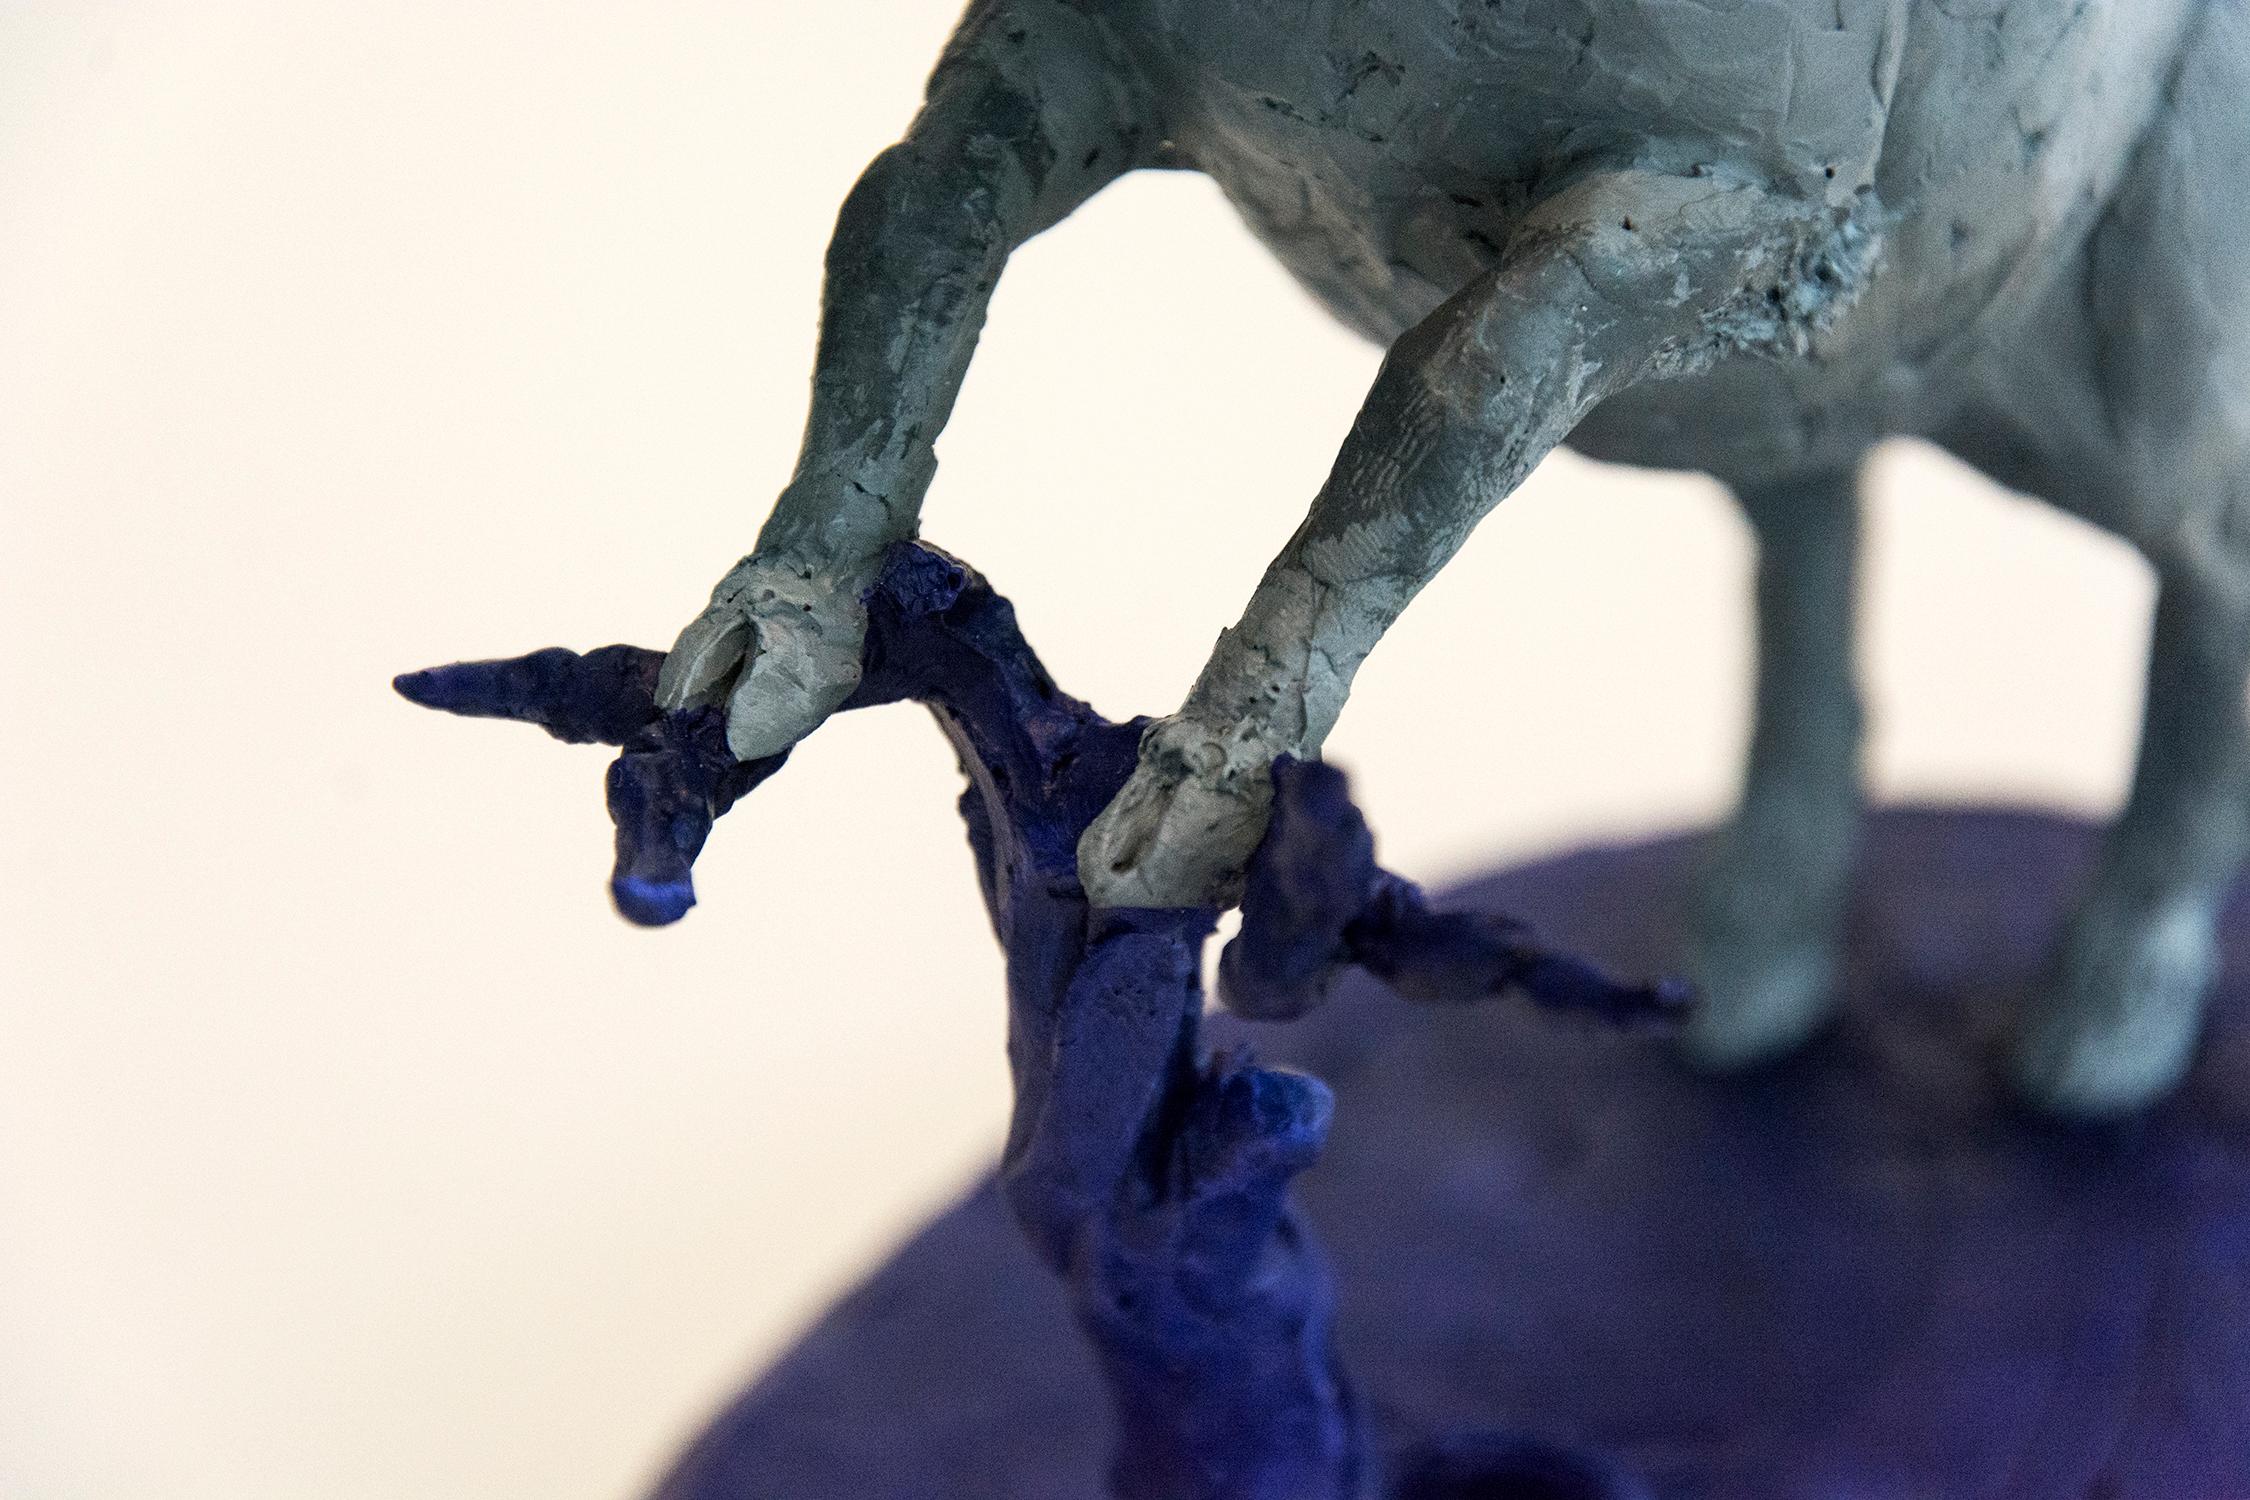 Boar 2/8 - klein, grau, blau, figurativ, Tier, Harzguss, Tischskulptur (Blau), Still-Life Sculpture, von Nicholas Crombach